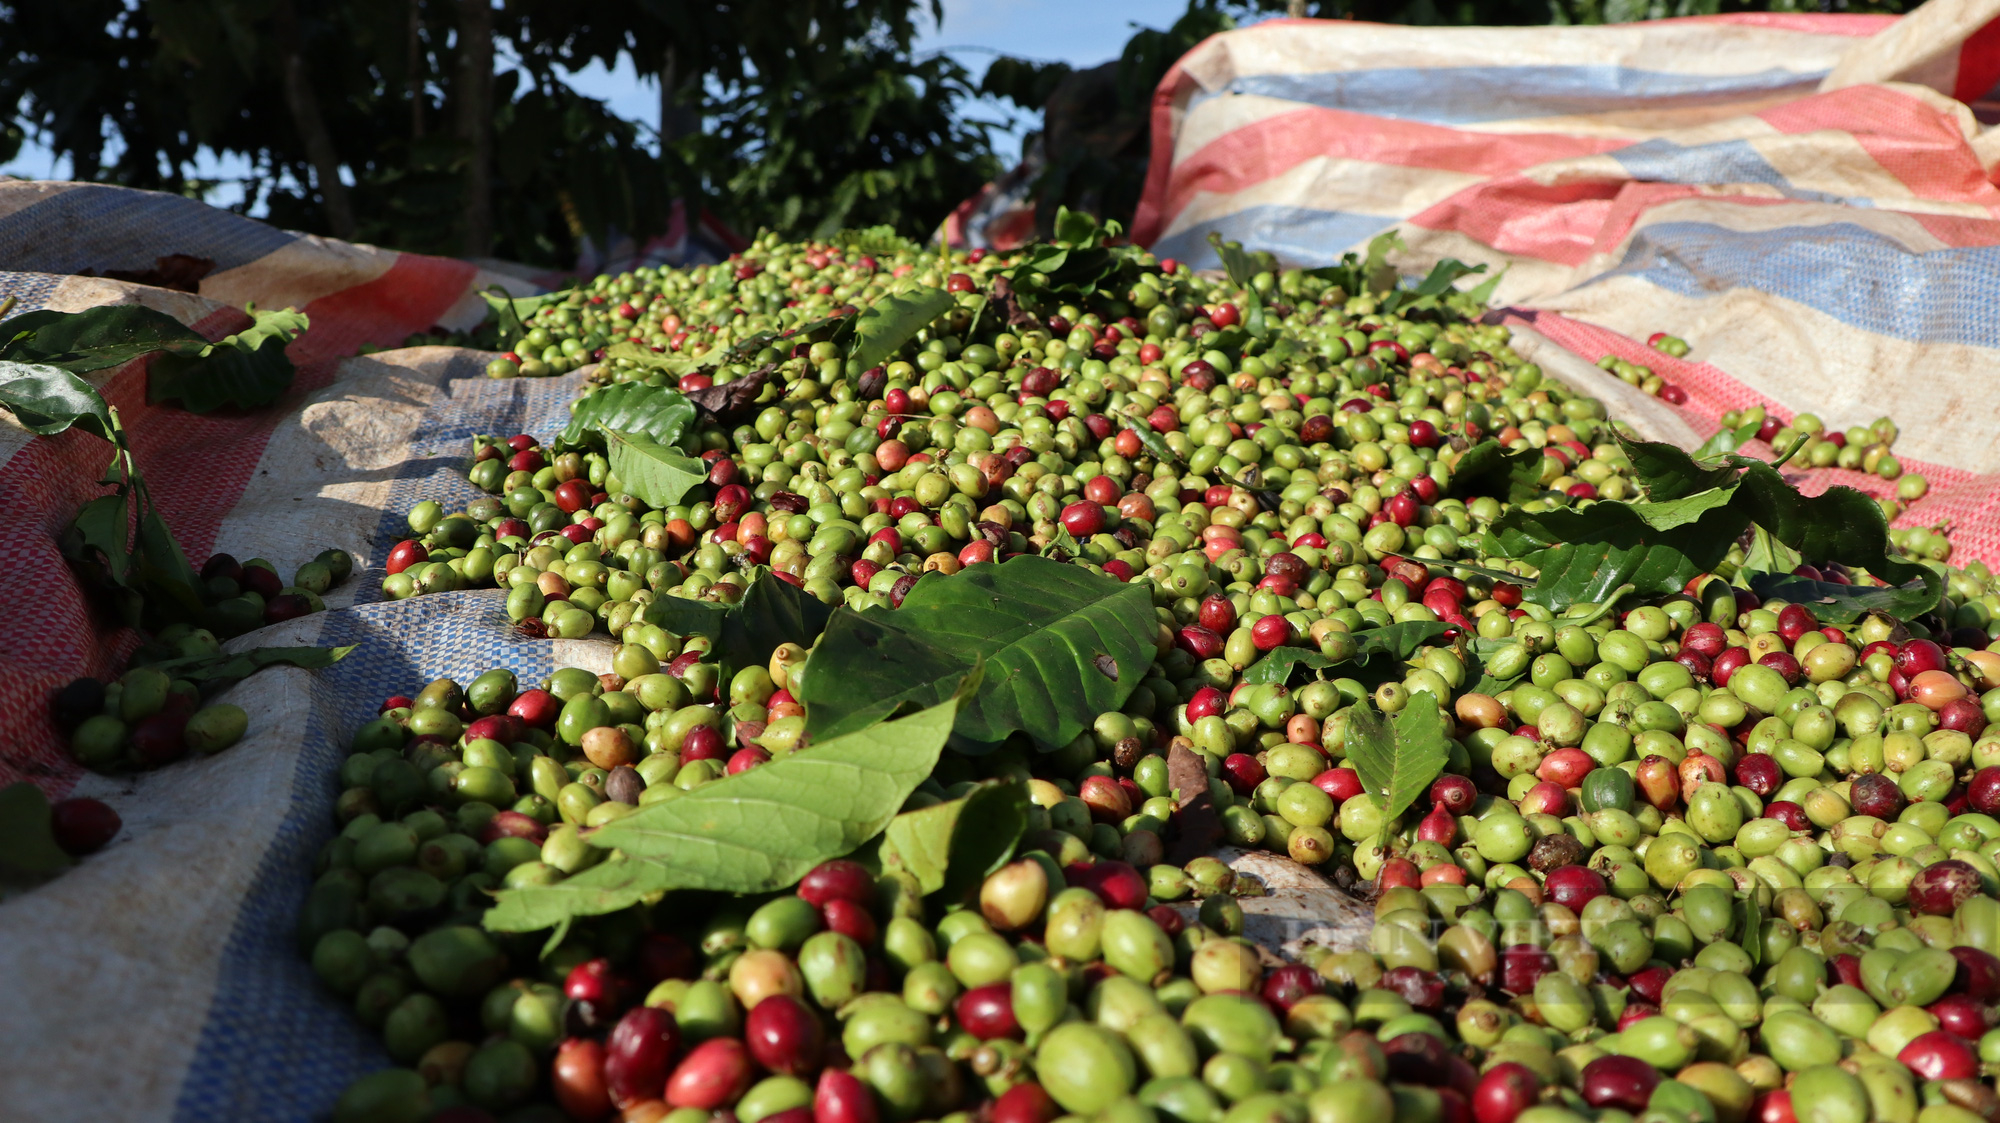 “Khan hiếm” nhân công thu hoạch, người hái cà phê khoán kiếm 500.000-700.000 đồng mỗi ngày - Ảnh 5.